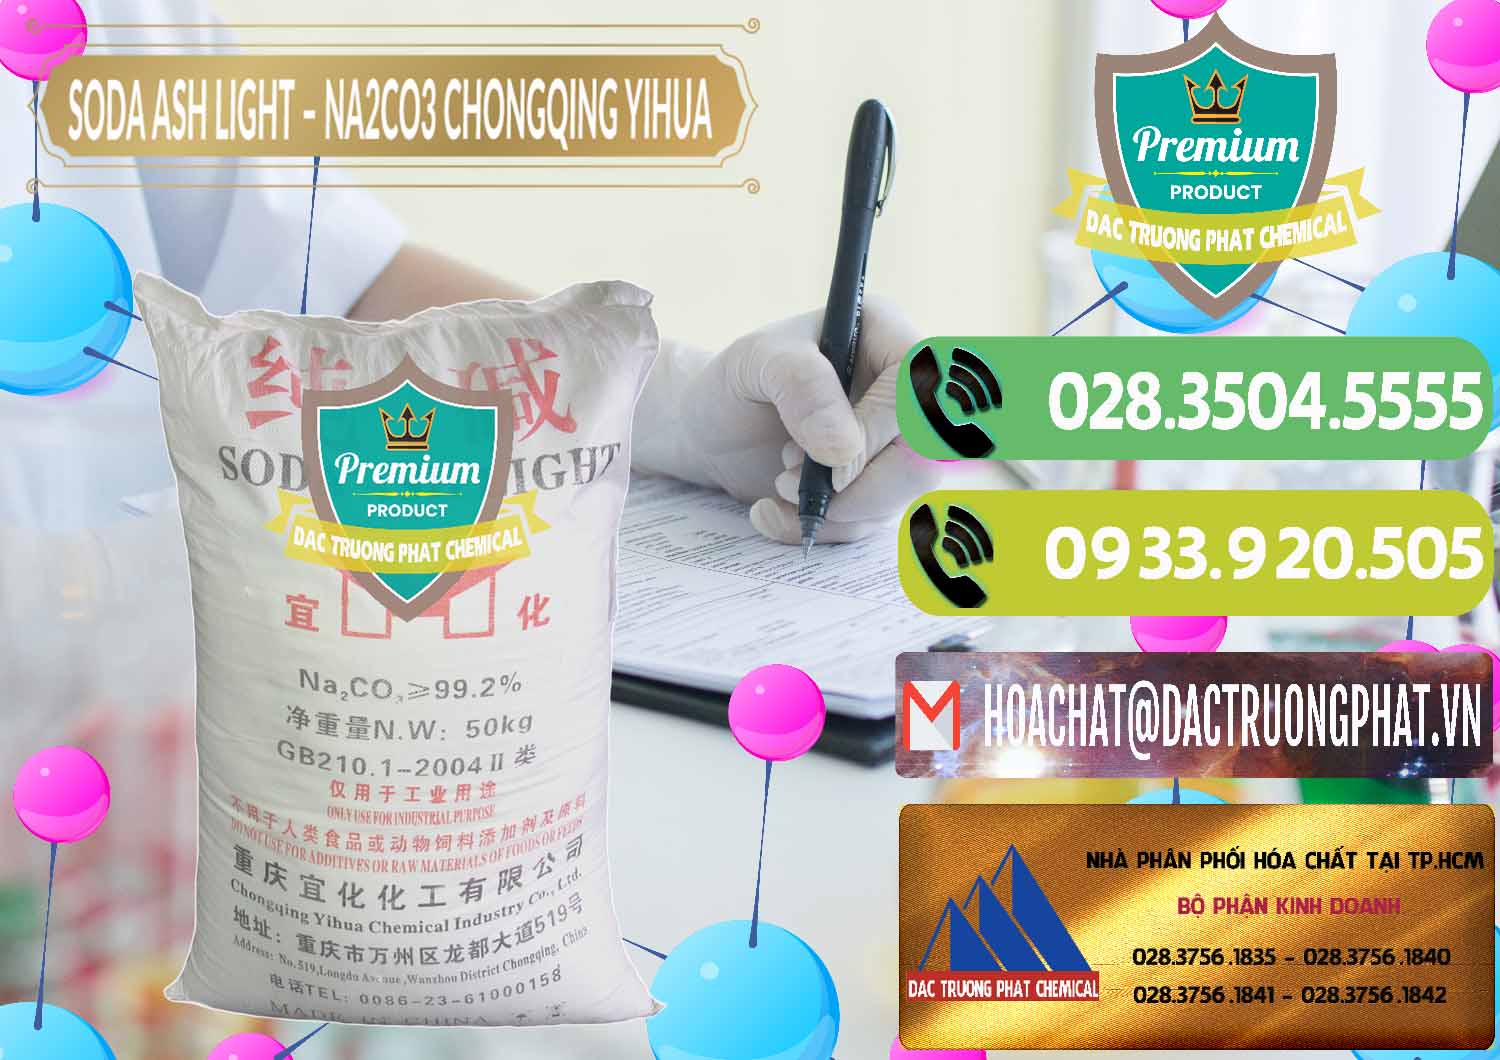 Nơi cung cấp & bán Soda Ash Light - NA2CO3 Chongqing Yihua Trung Quốc China - 0129 - Cty phân phối & kinh doanh hóa chất tại TP.HCM - hoachatmientay.vn